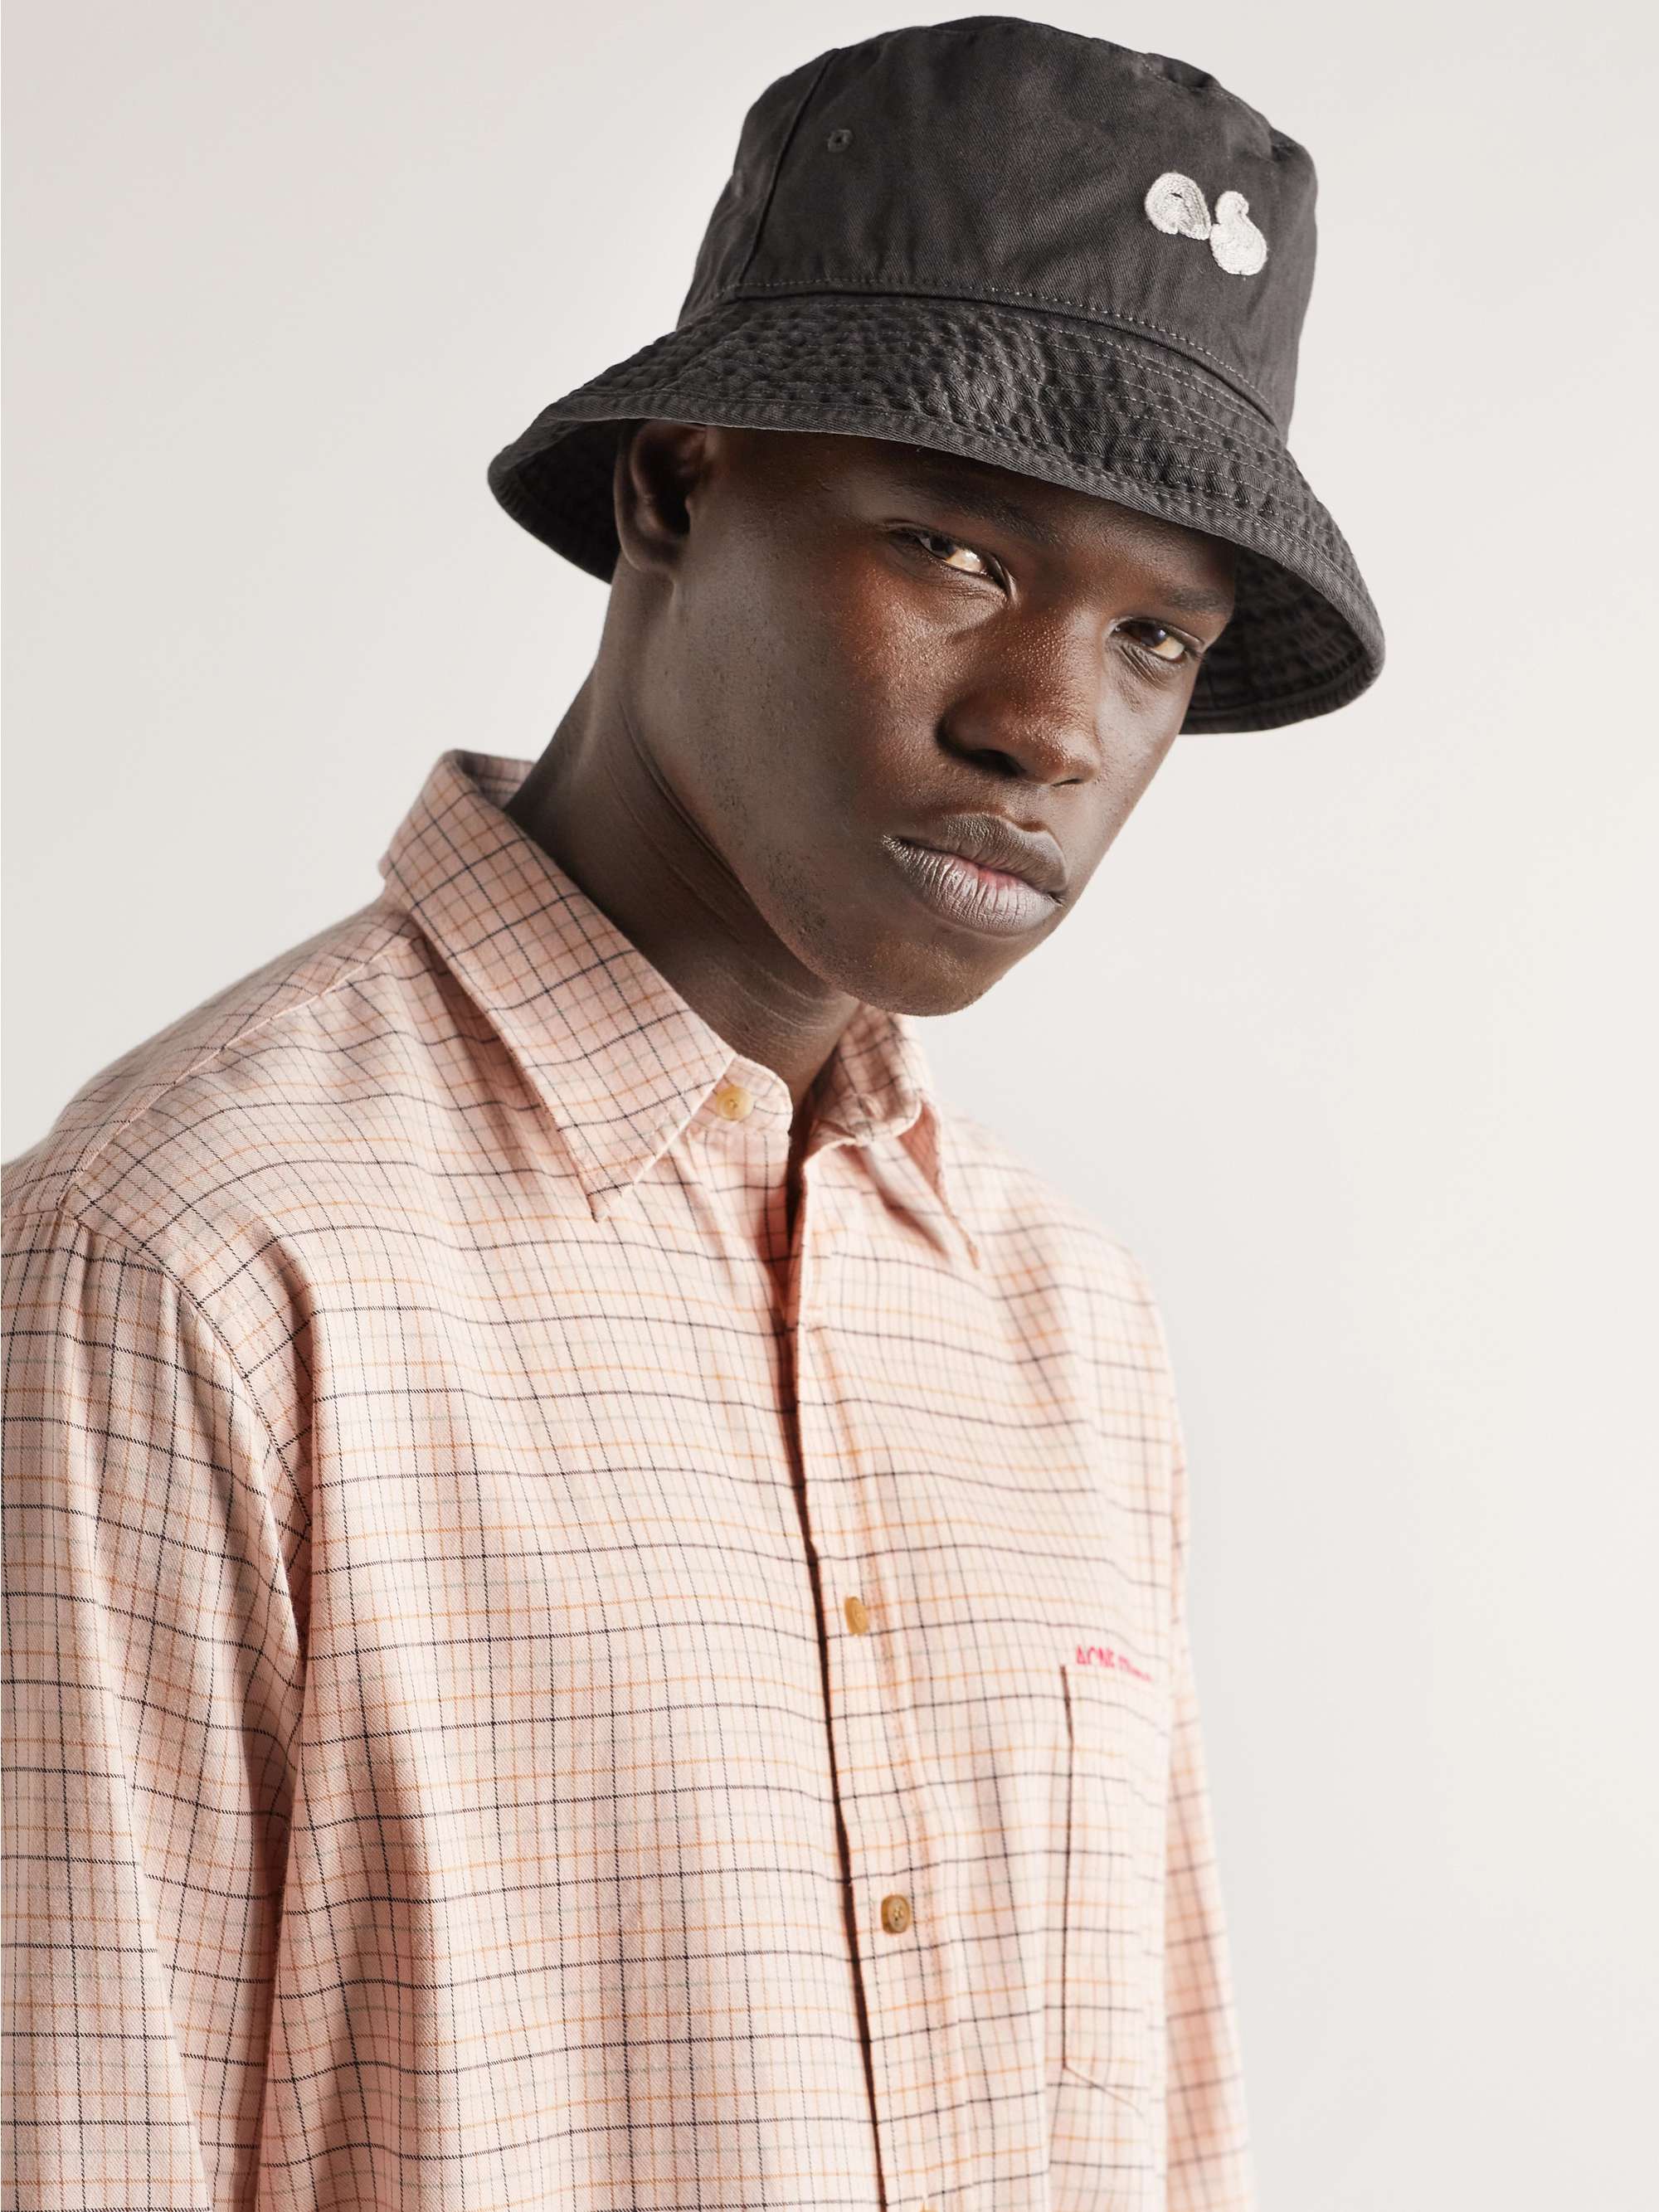 ACNE STUDIOS Logo-Appliquéd Garment-Dyed Cotton-Twill Bucket Hat